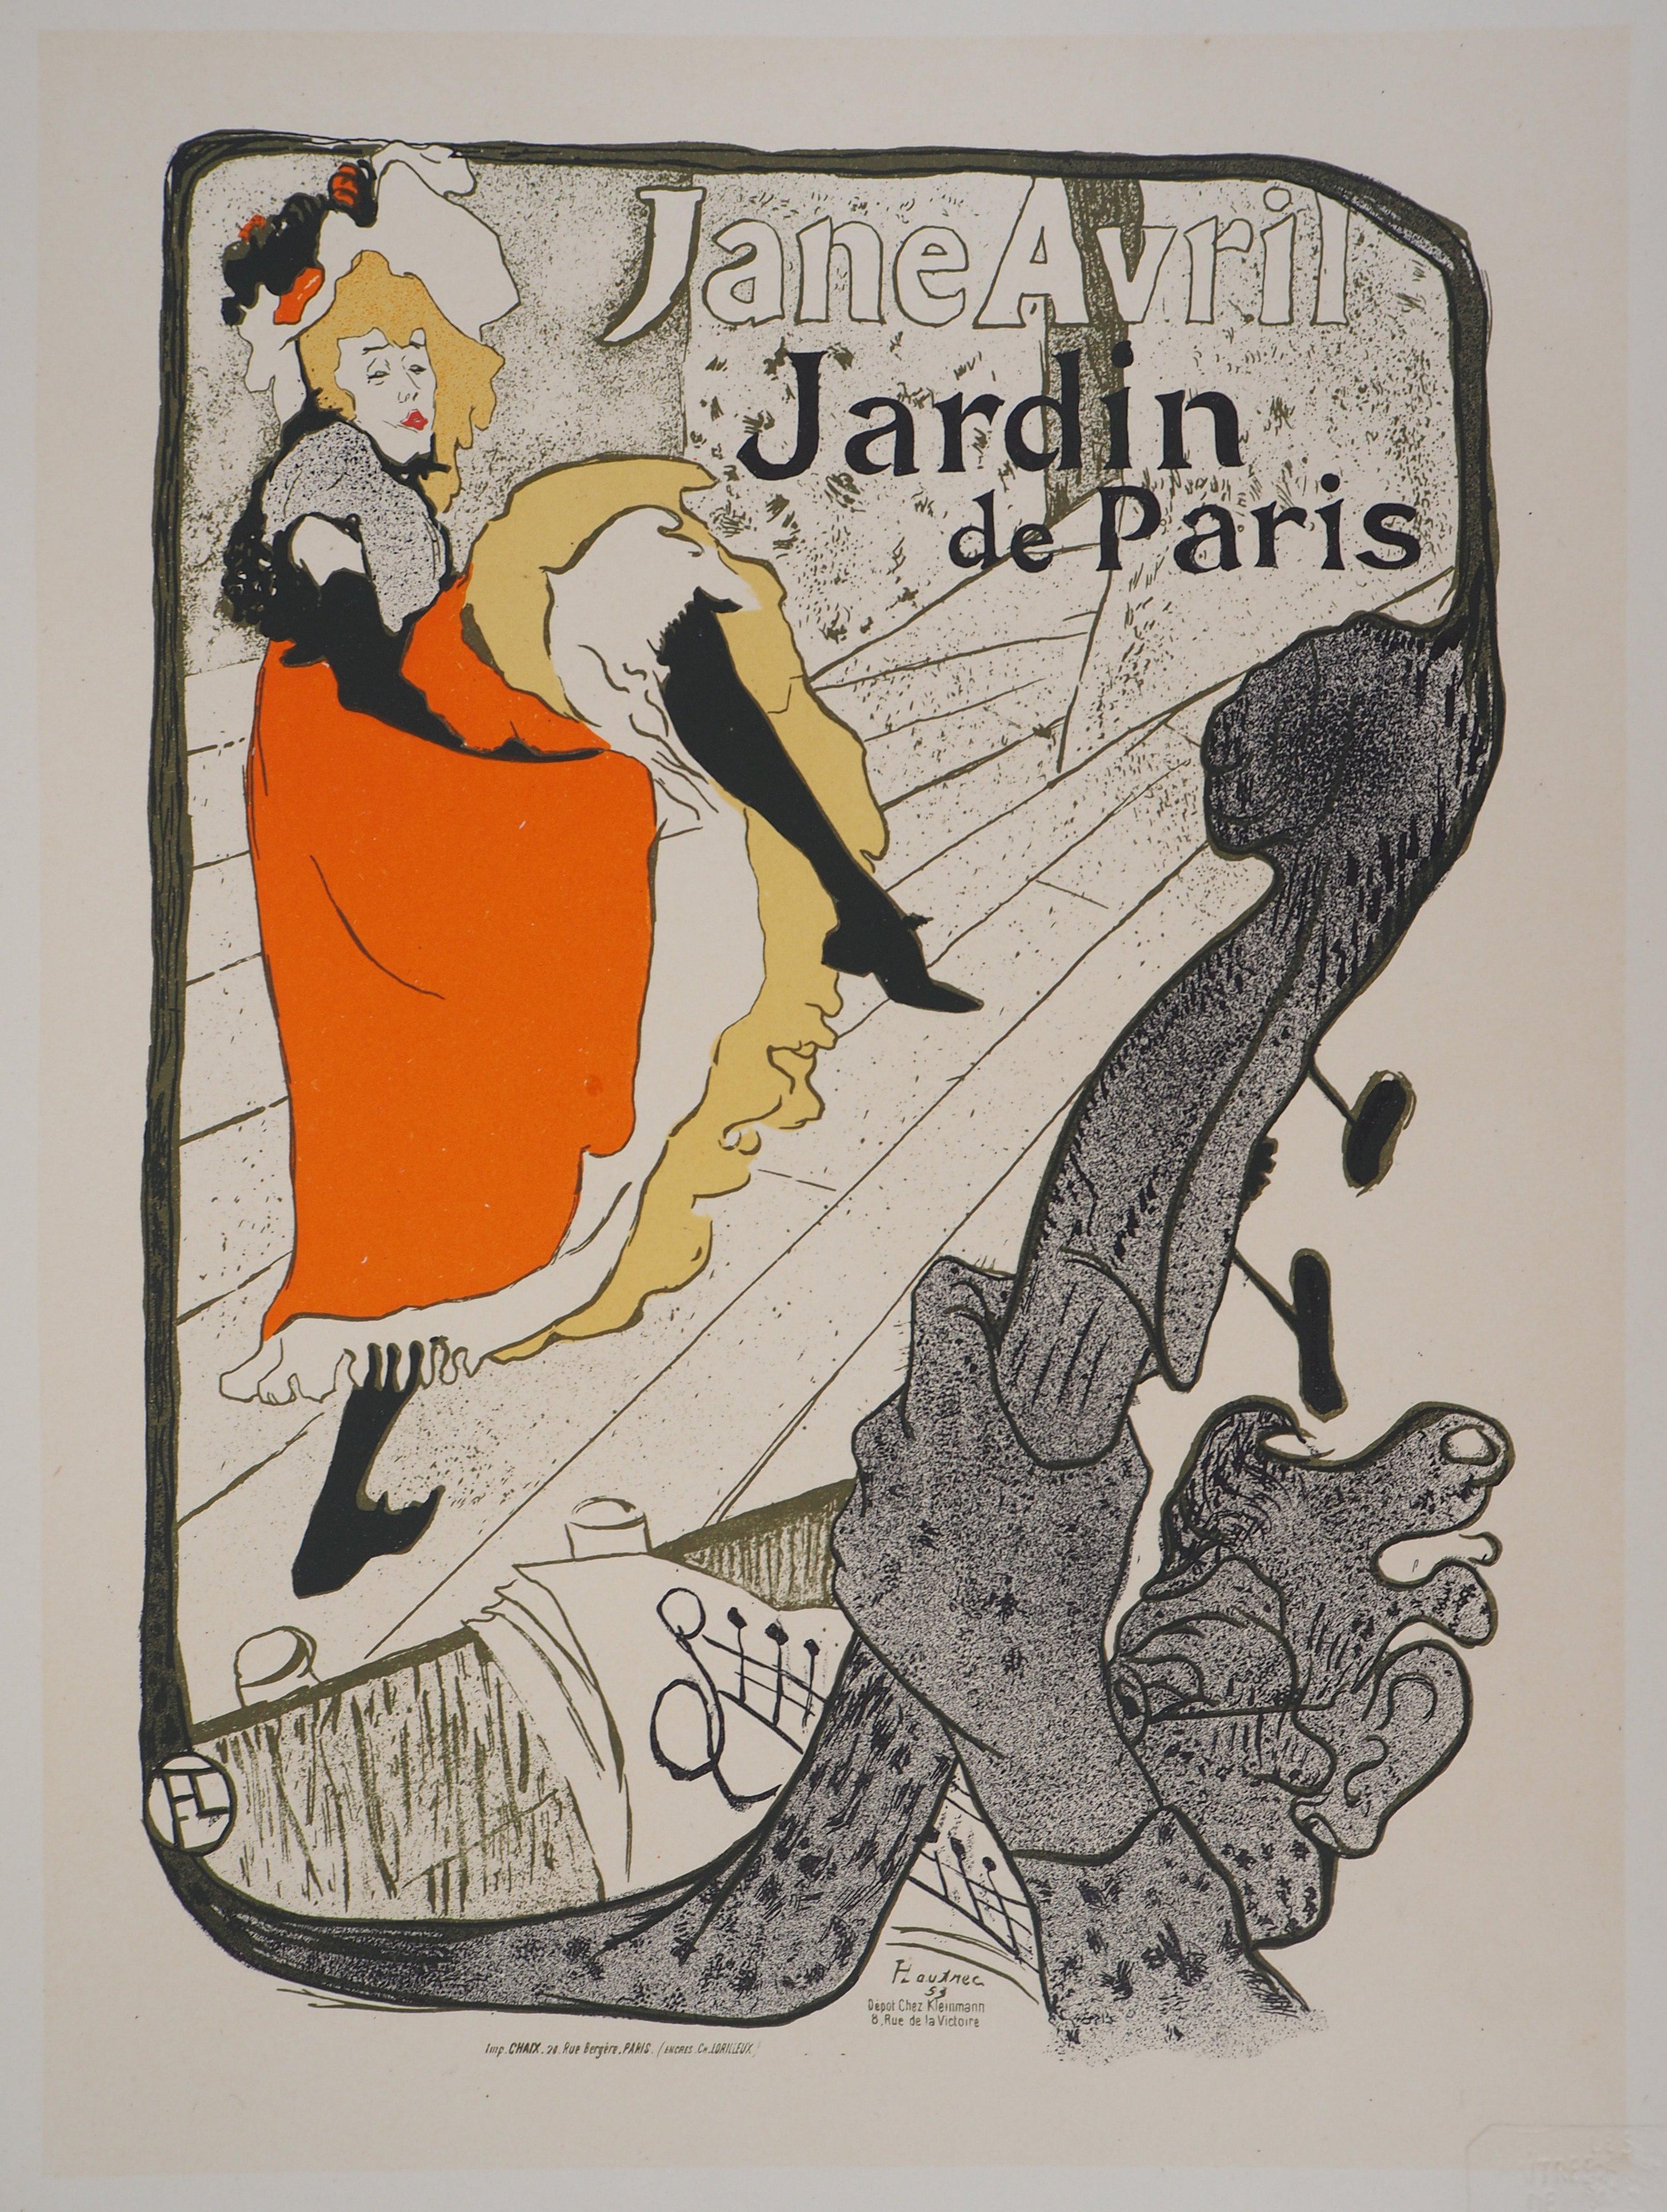 (After) Henri Toulouse Lautrec Figurative Print - Jane Avril (Jardin de Paris) - Lithograph (Les Maîtres de l'Affiche), 1897